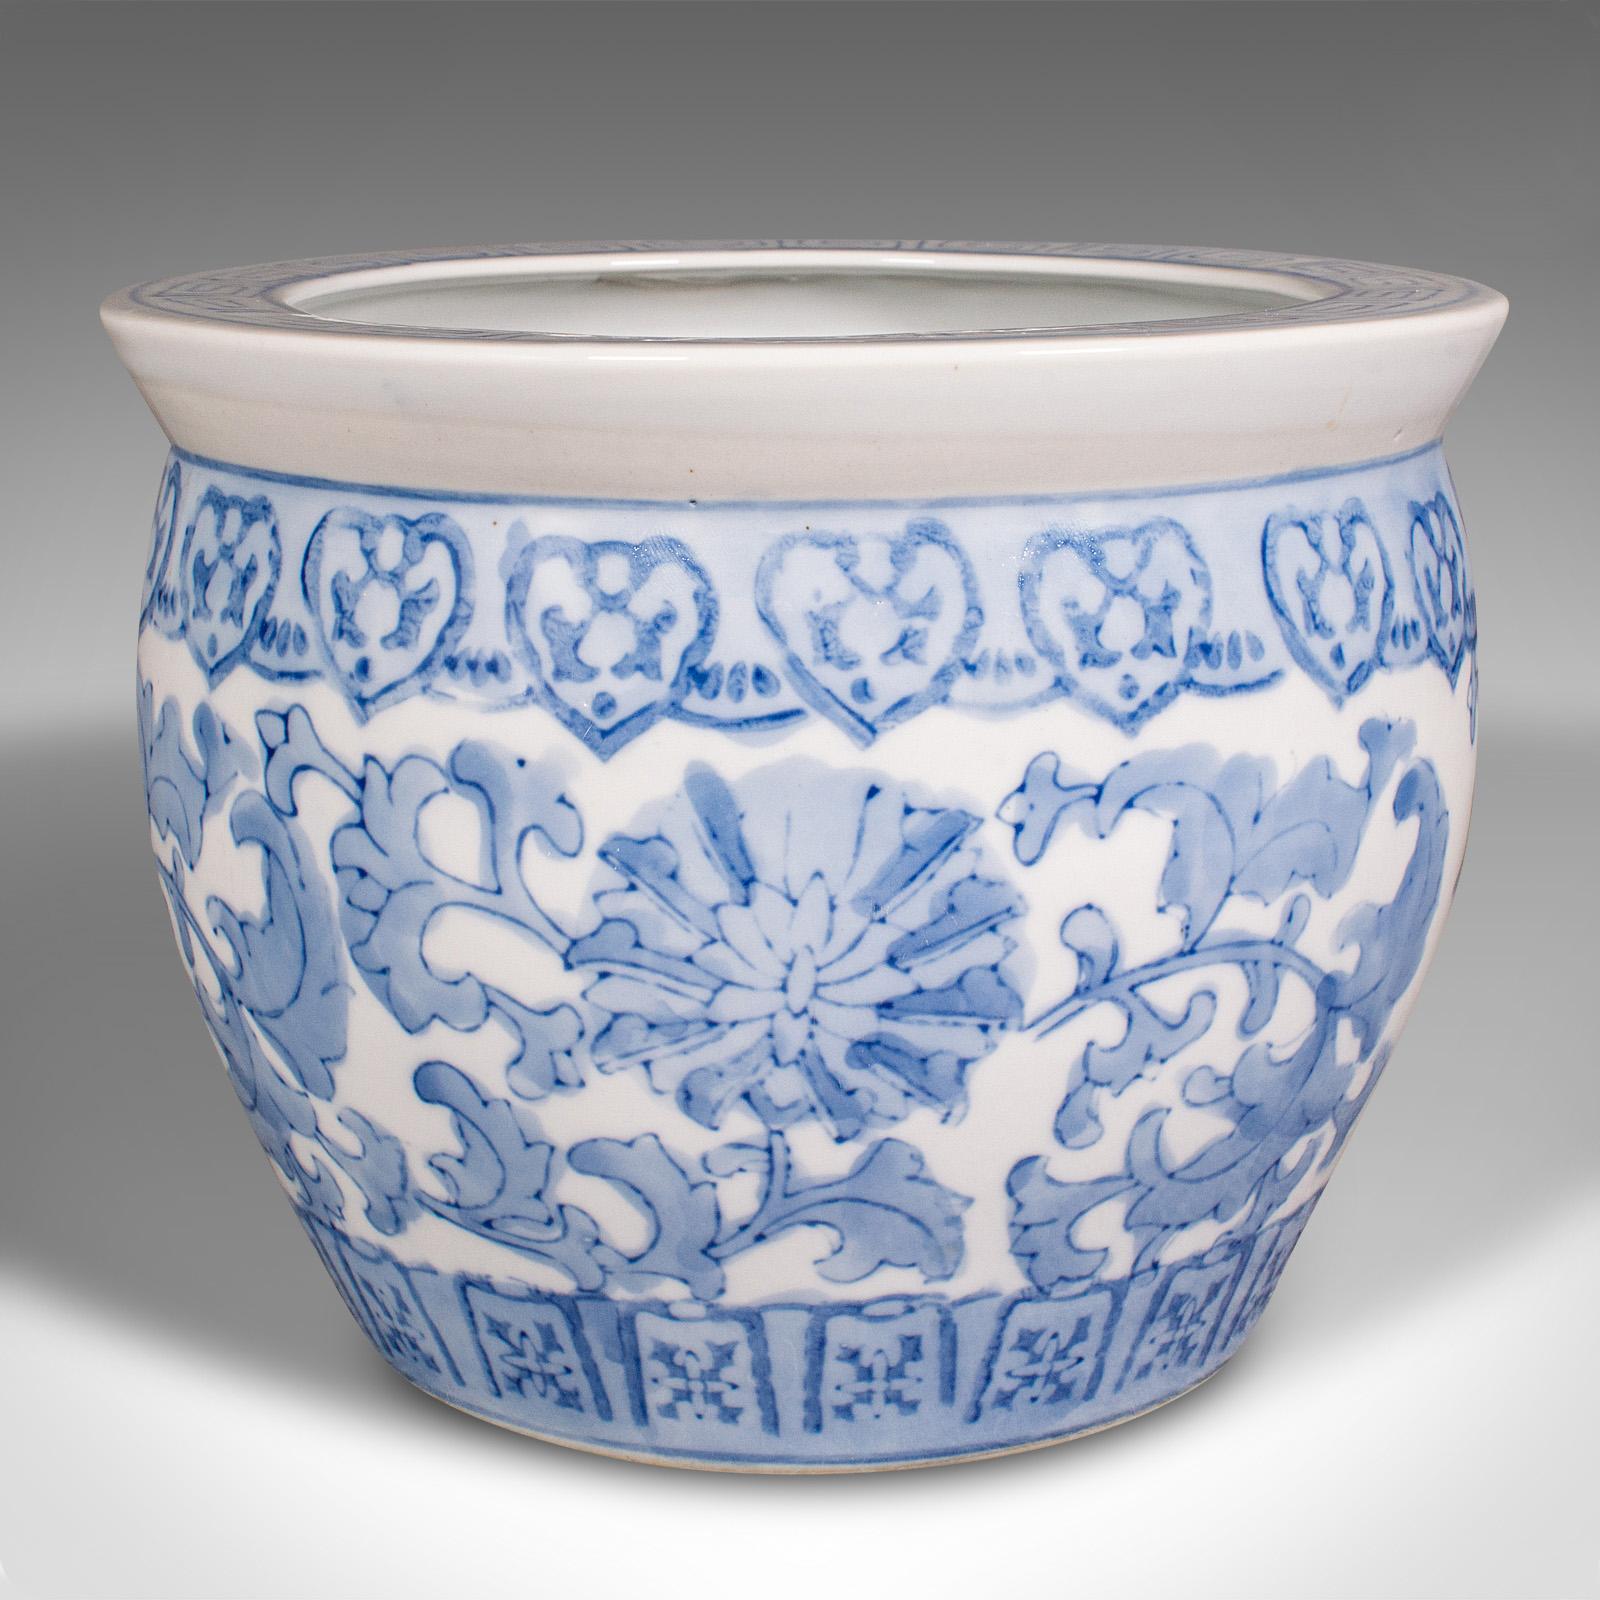 Dies ist ein kleiner Vintage-Pflanzer. Eine chinesische Keramik-Jardiniere im späten Art-déco-Stil aus der Mitte des 20. Jahrhunderts, um 1940.

Angenehm zierlich, ideal für die Präsentation im Schaufenster
Zeigt eine wünschenswerte gealterte Patina